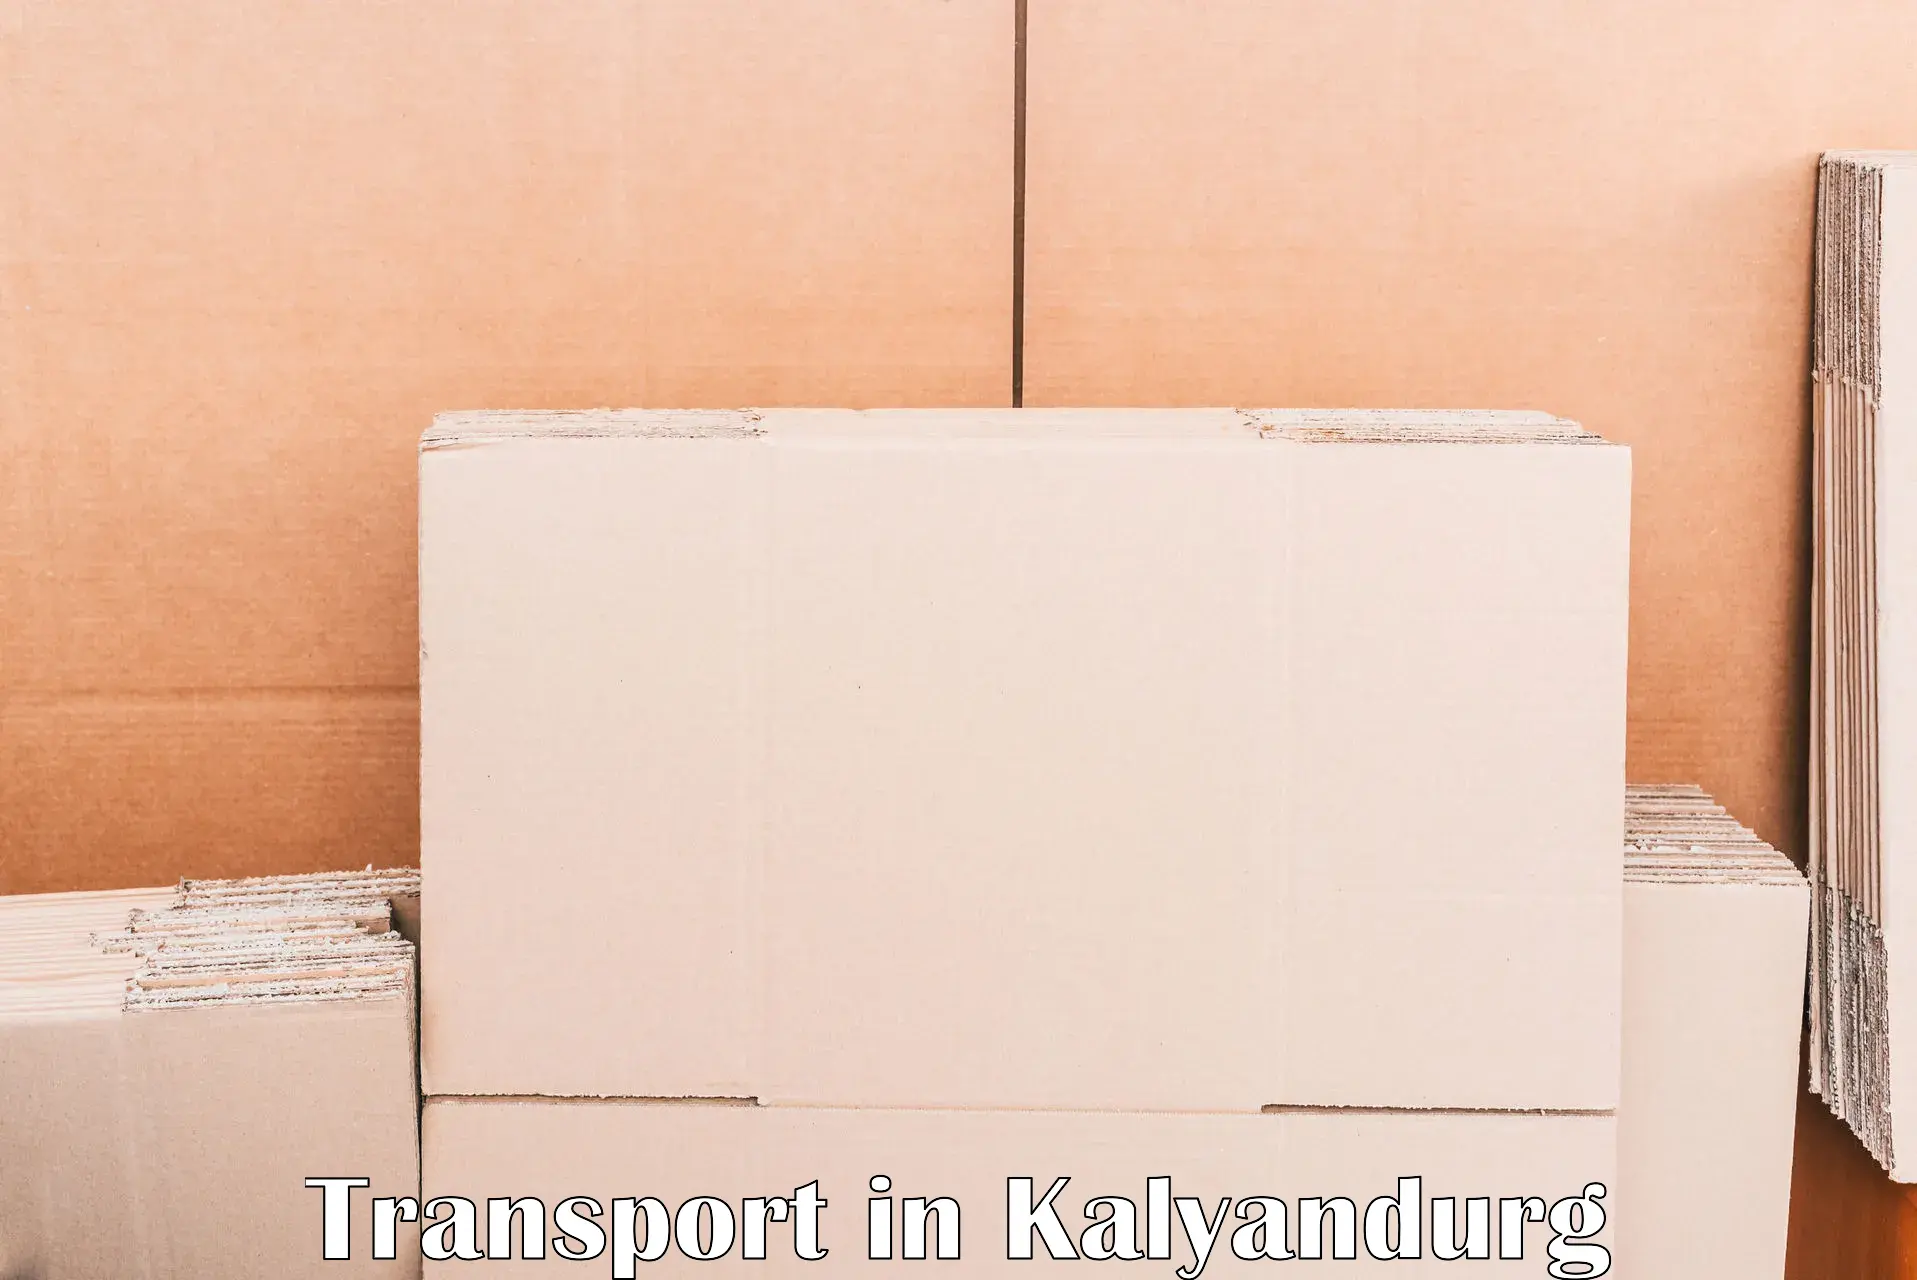 Container transport service in Kalyandurg